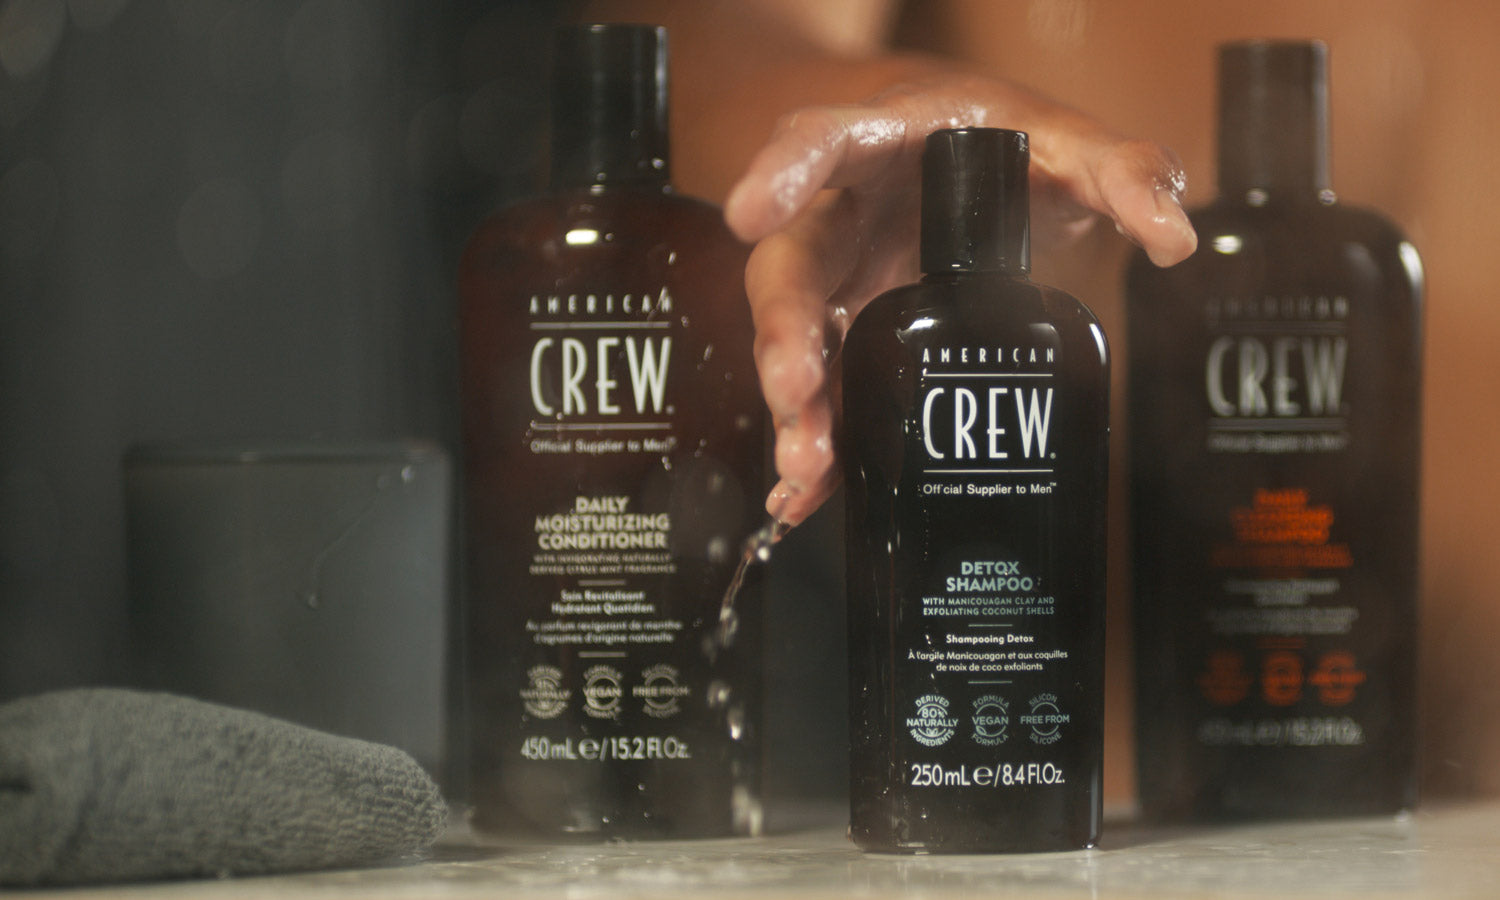 Shampoo for Men, Hair Care for Men - American Crew